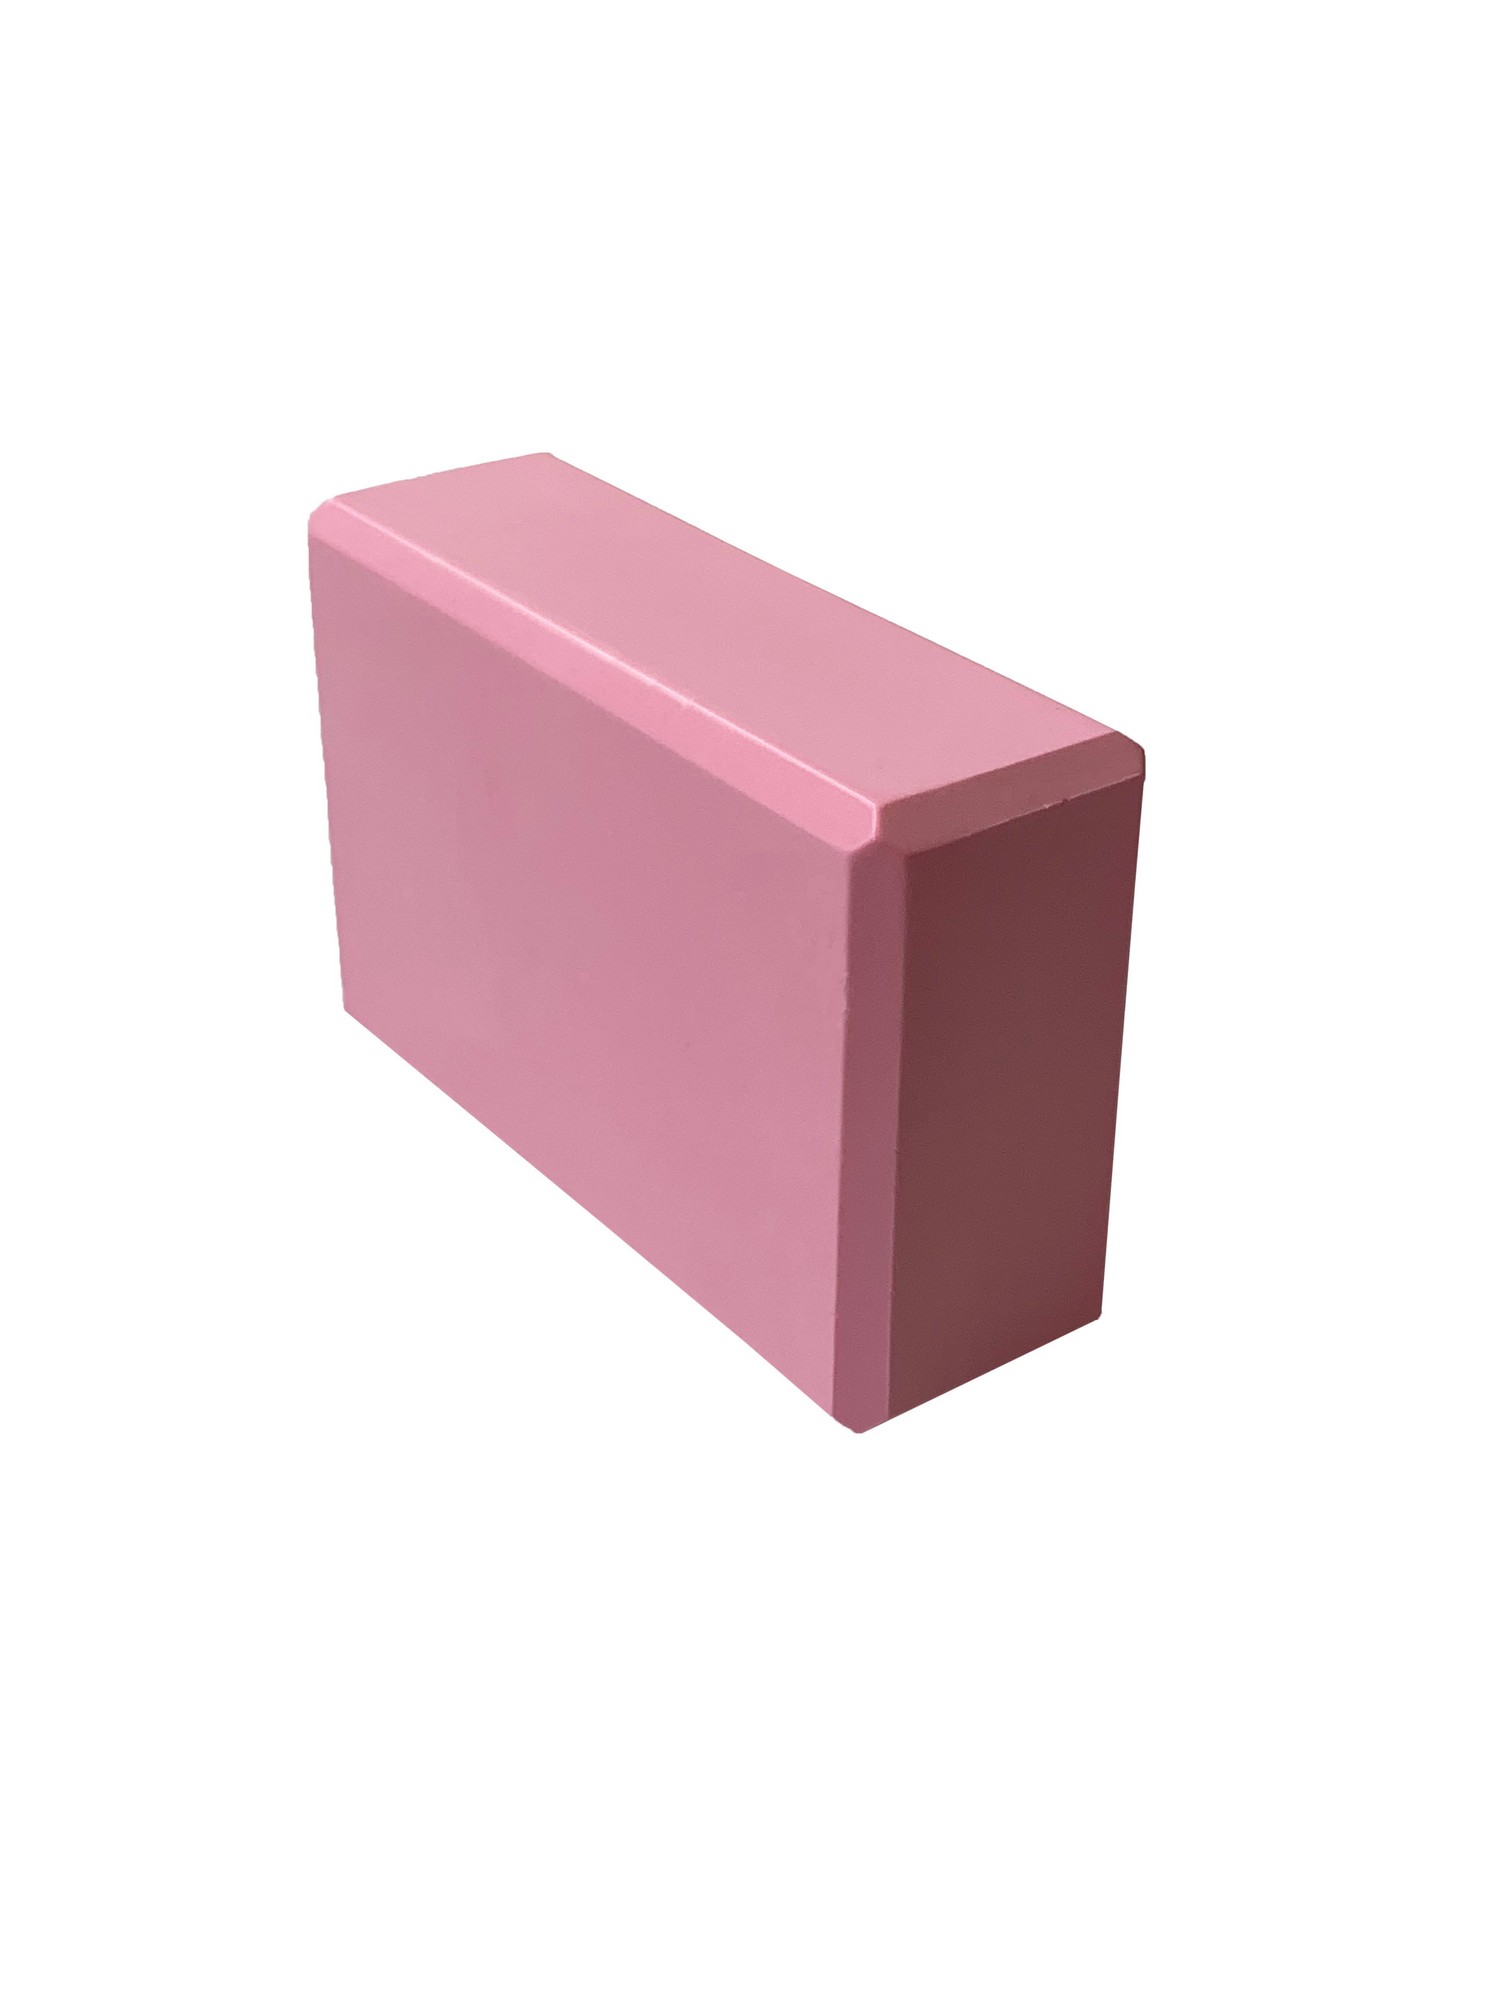 Йога блок Sportex полумягкий, из вспененного ЭВА 22,3х15х7,6 см E39131-35 розовый